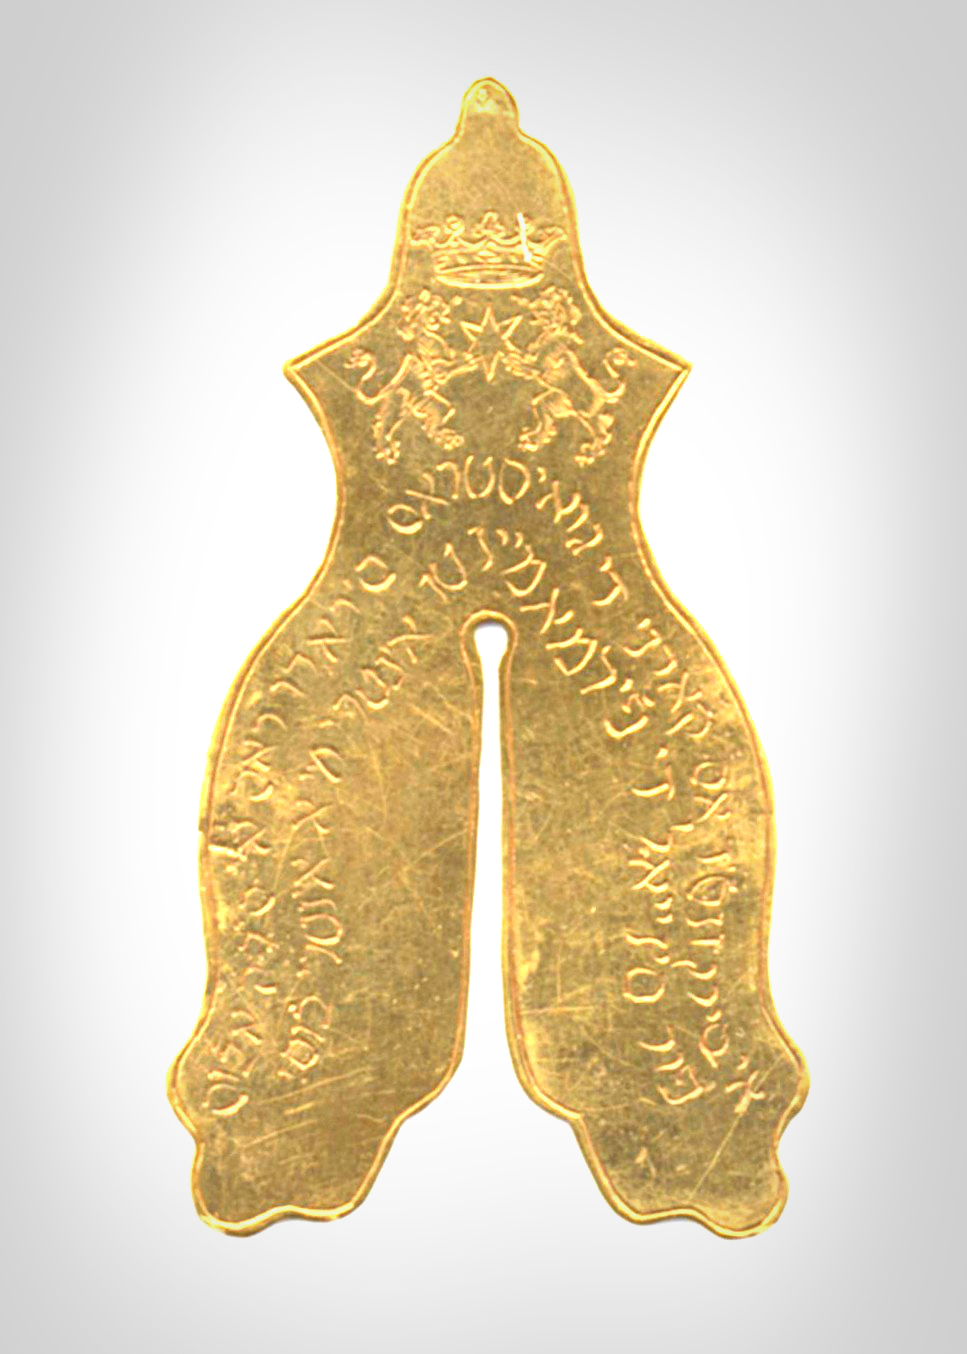 Gold circumcision shield